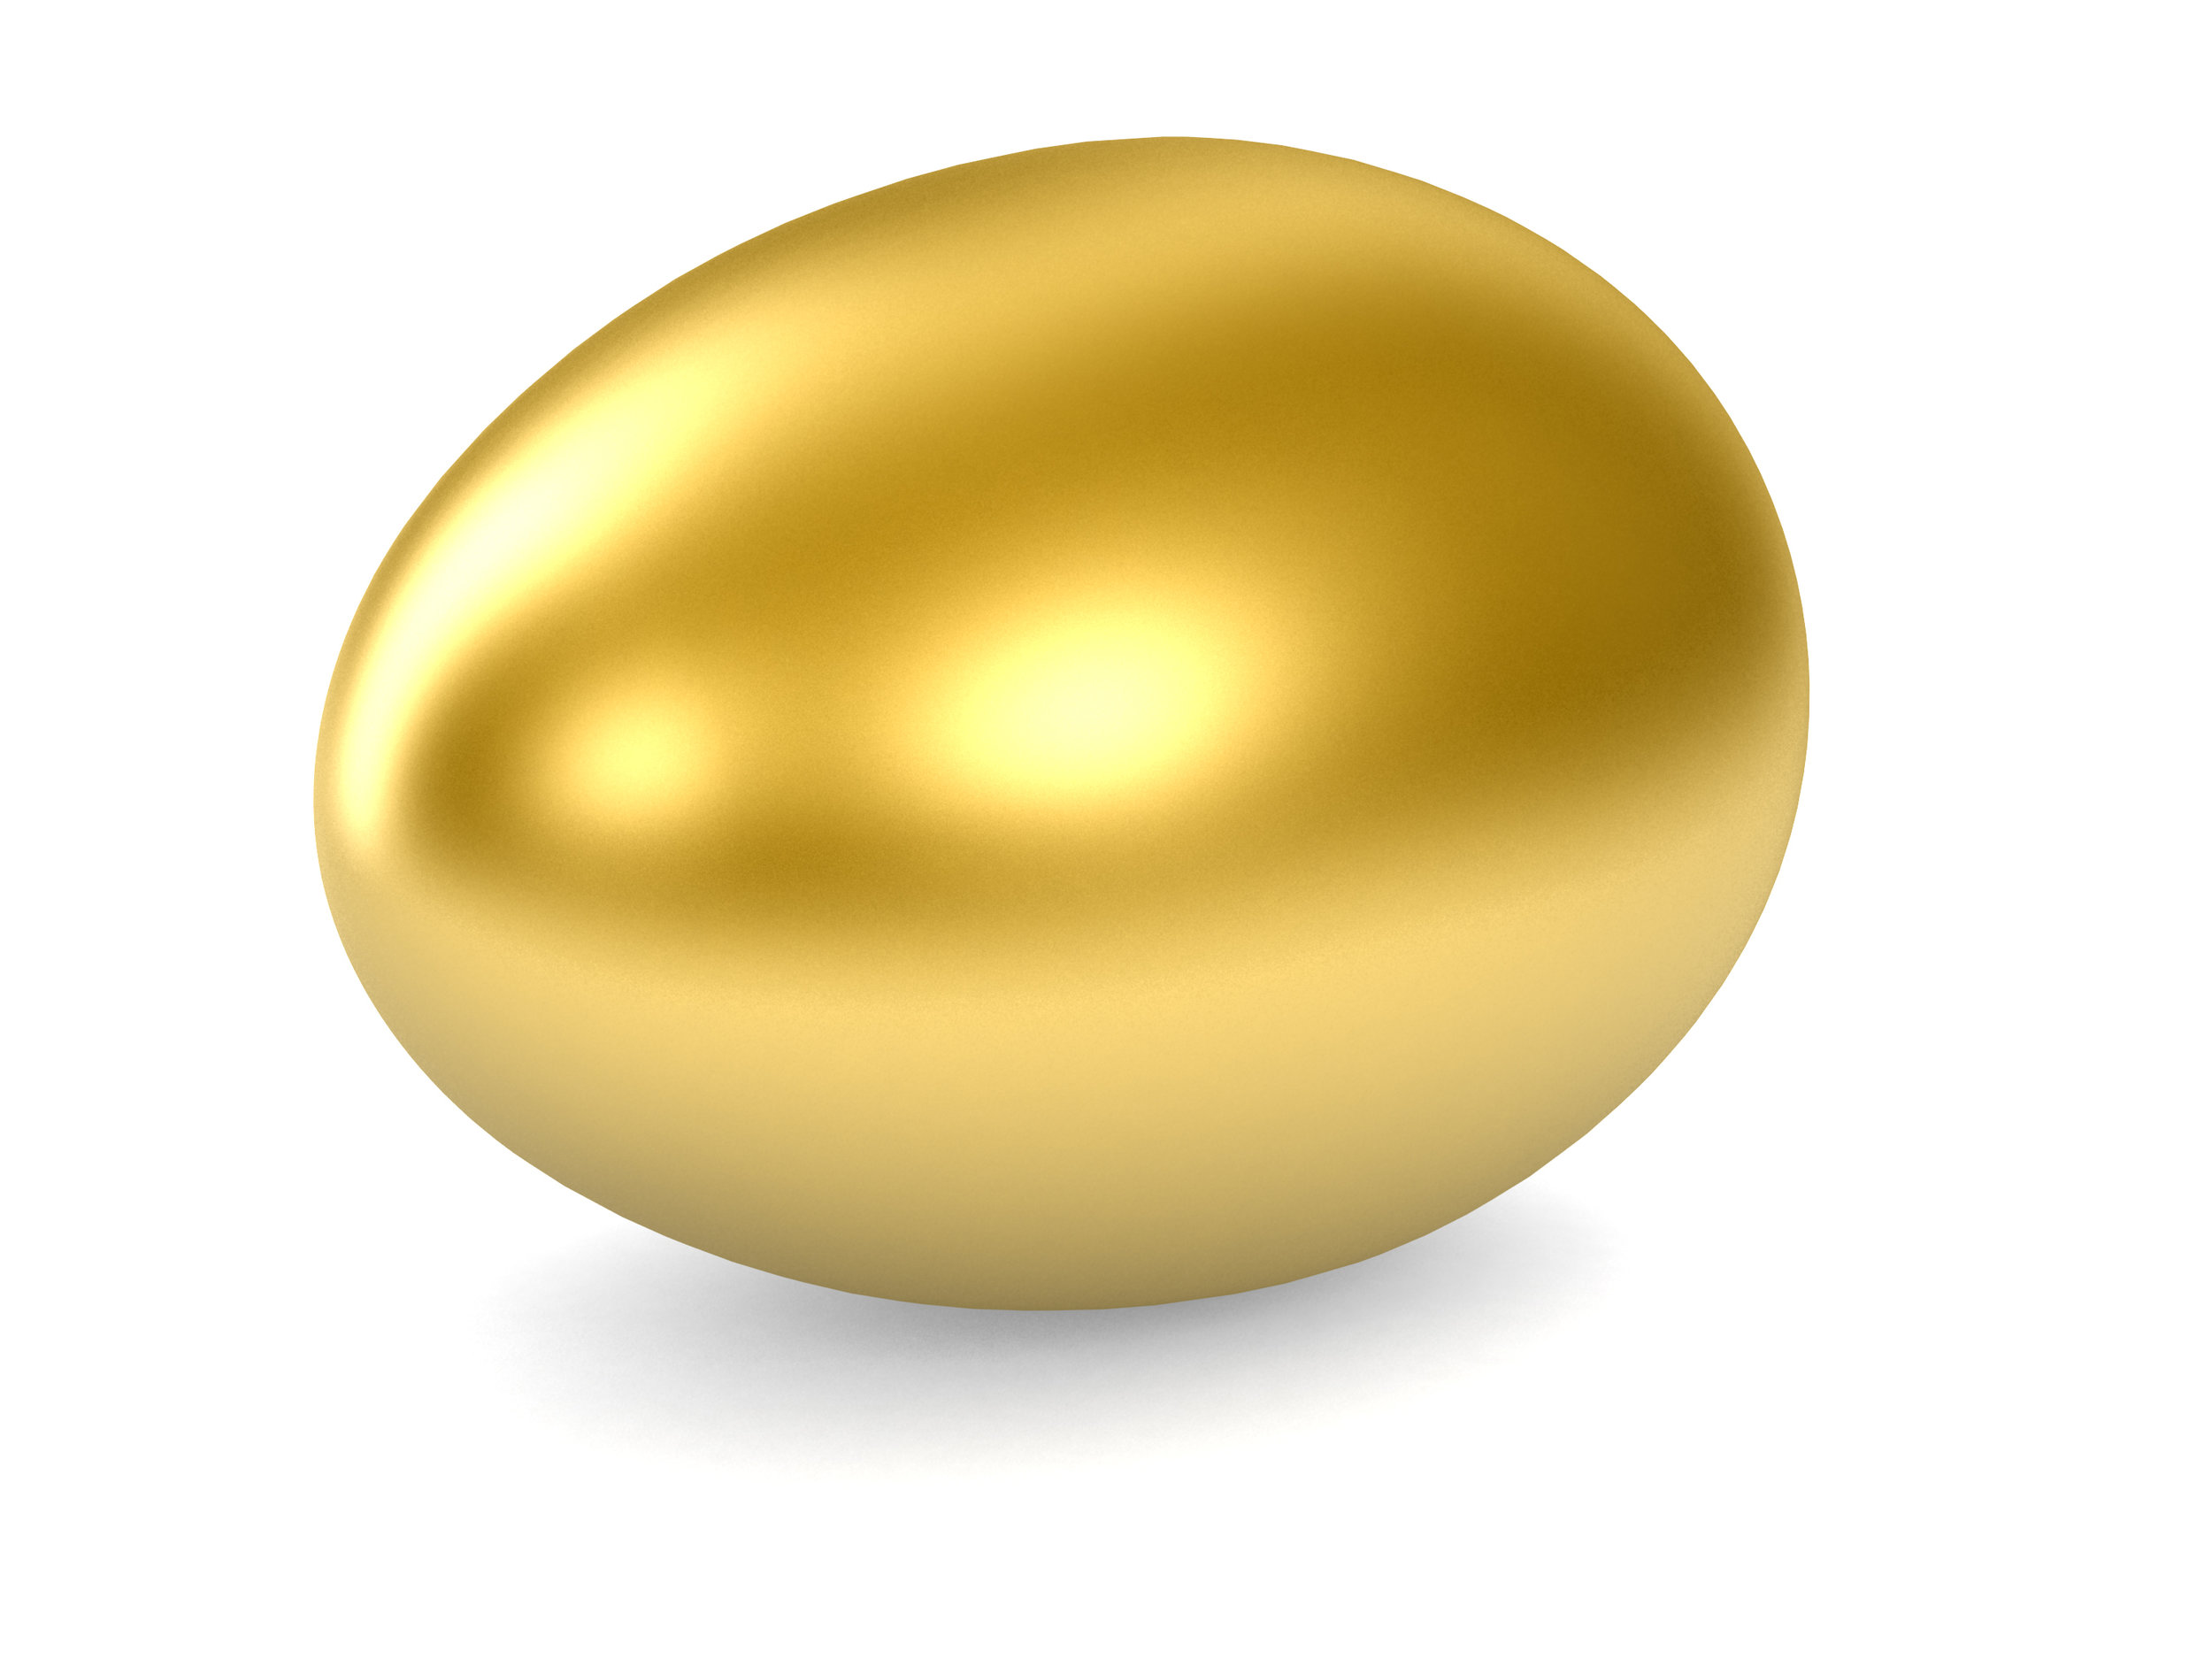 Image result for golden egg